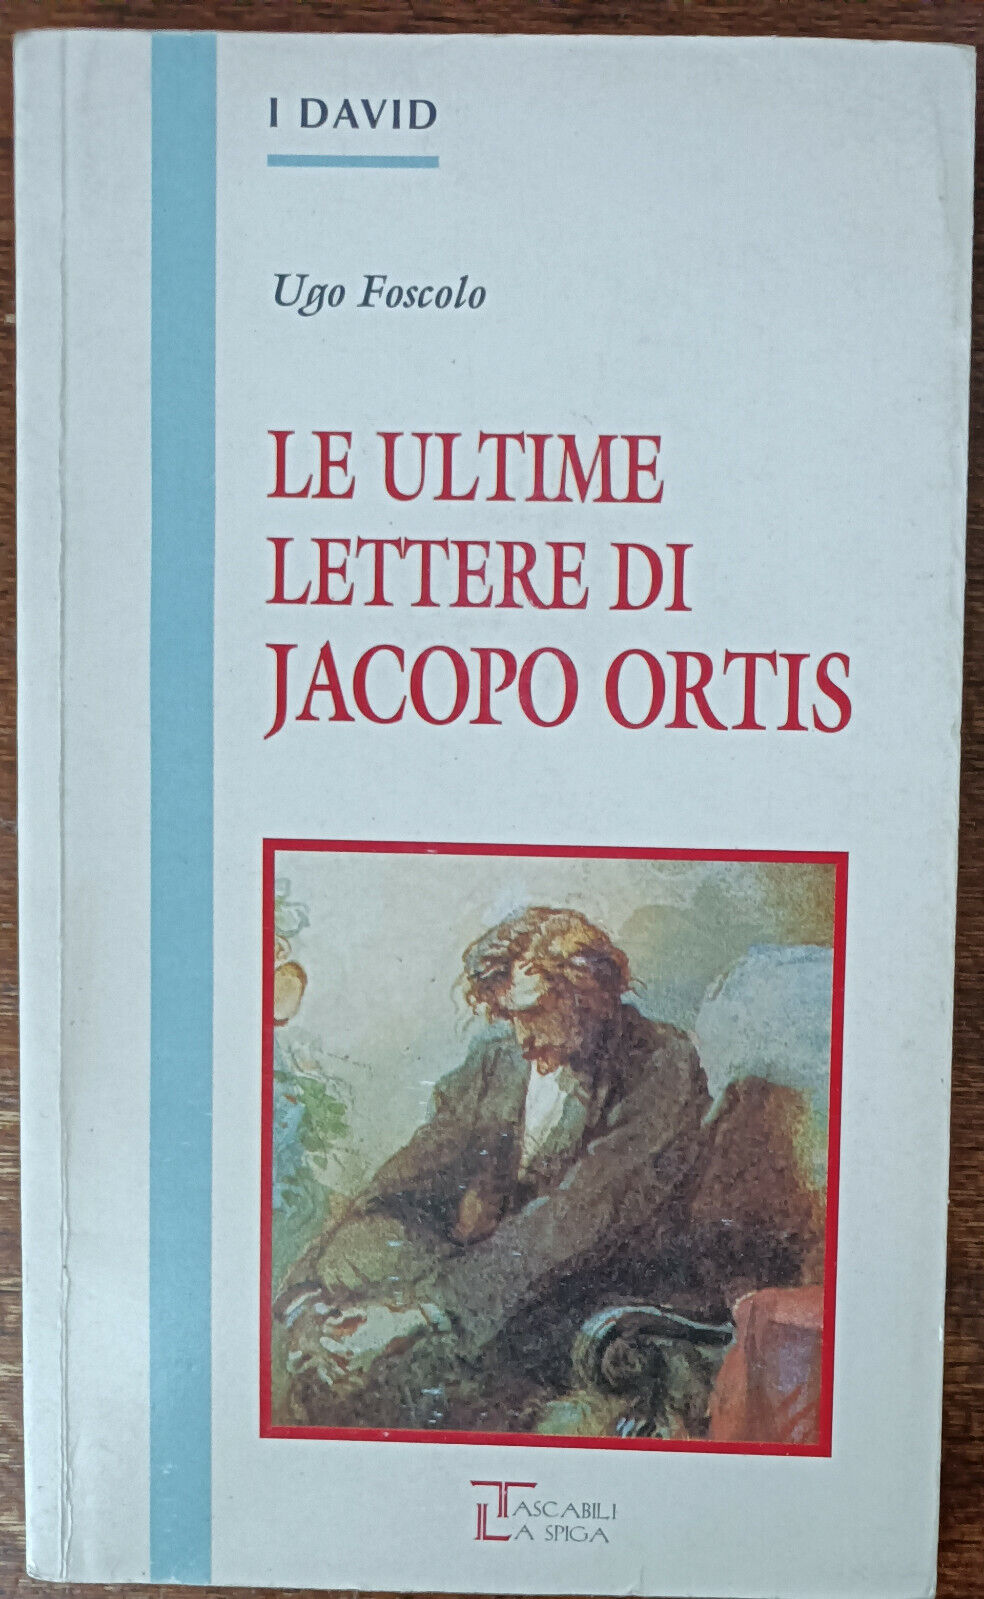 Ultime lettere di Jacopo Ortis - Ugo Foscolo - La spiga, 1996 - A